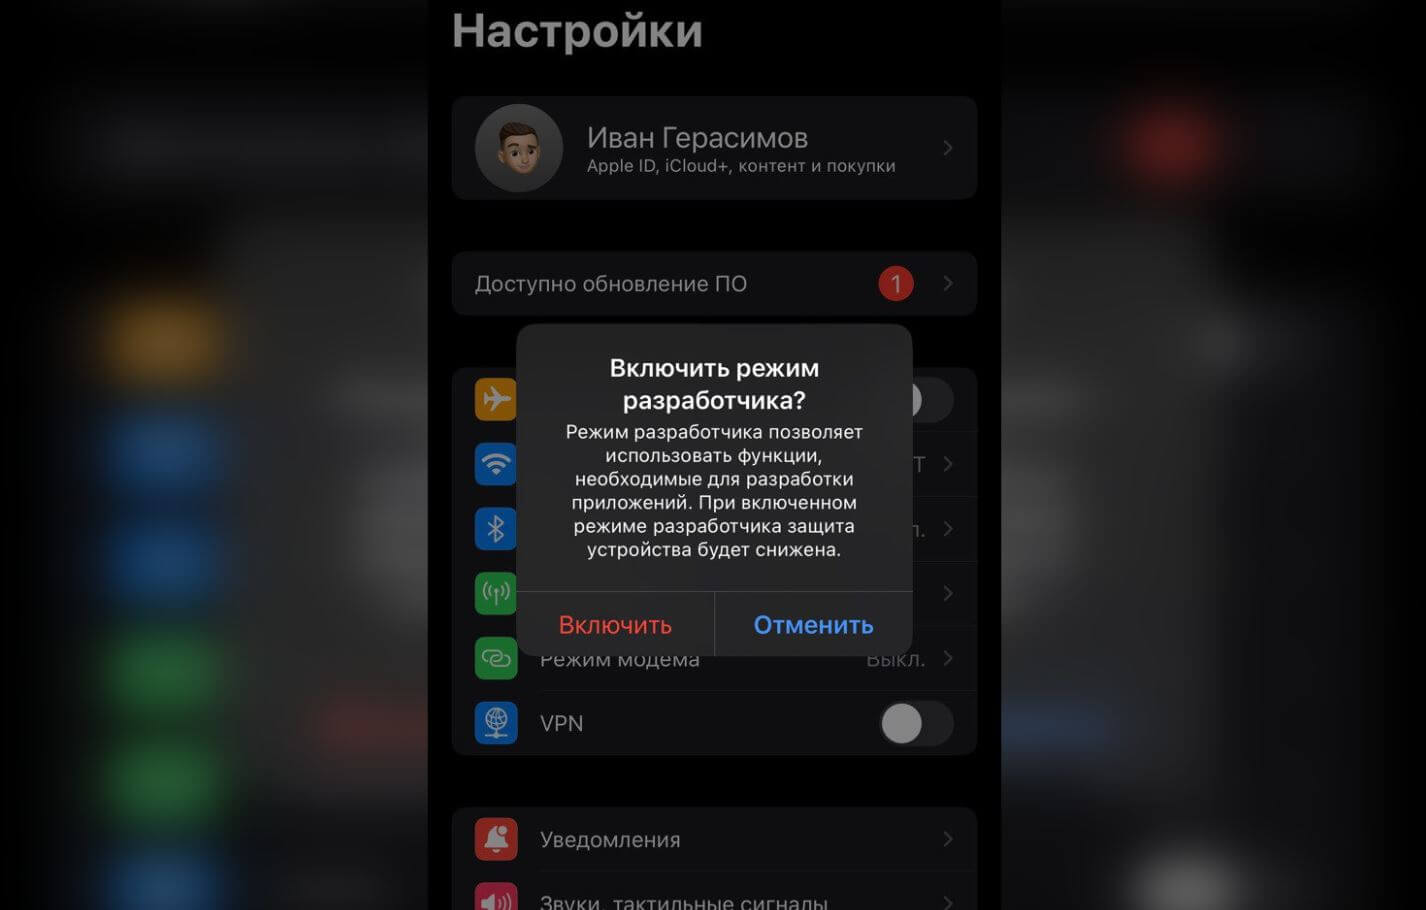 Зачем нужен режим разработчика на Айфоне, и что будет, если его включить |  AppleInsider.ru